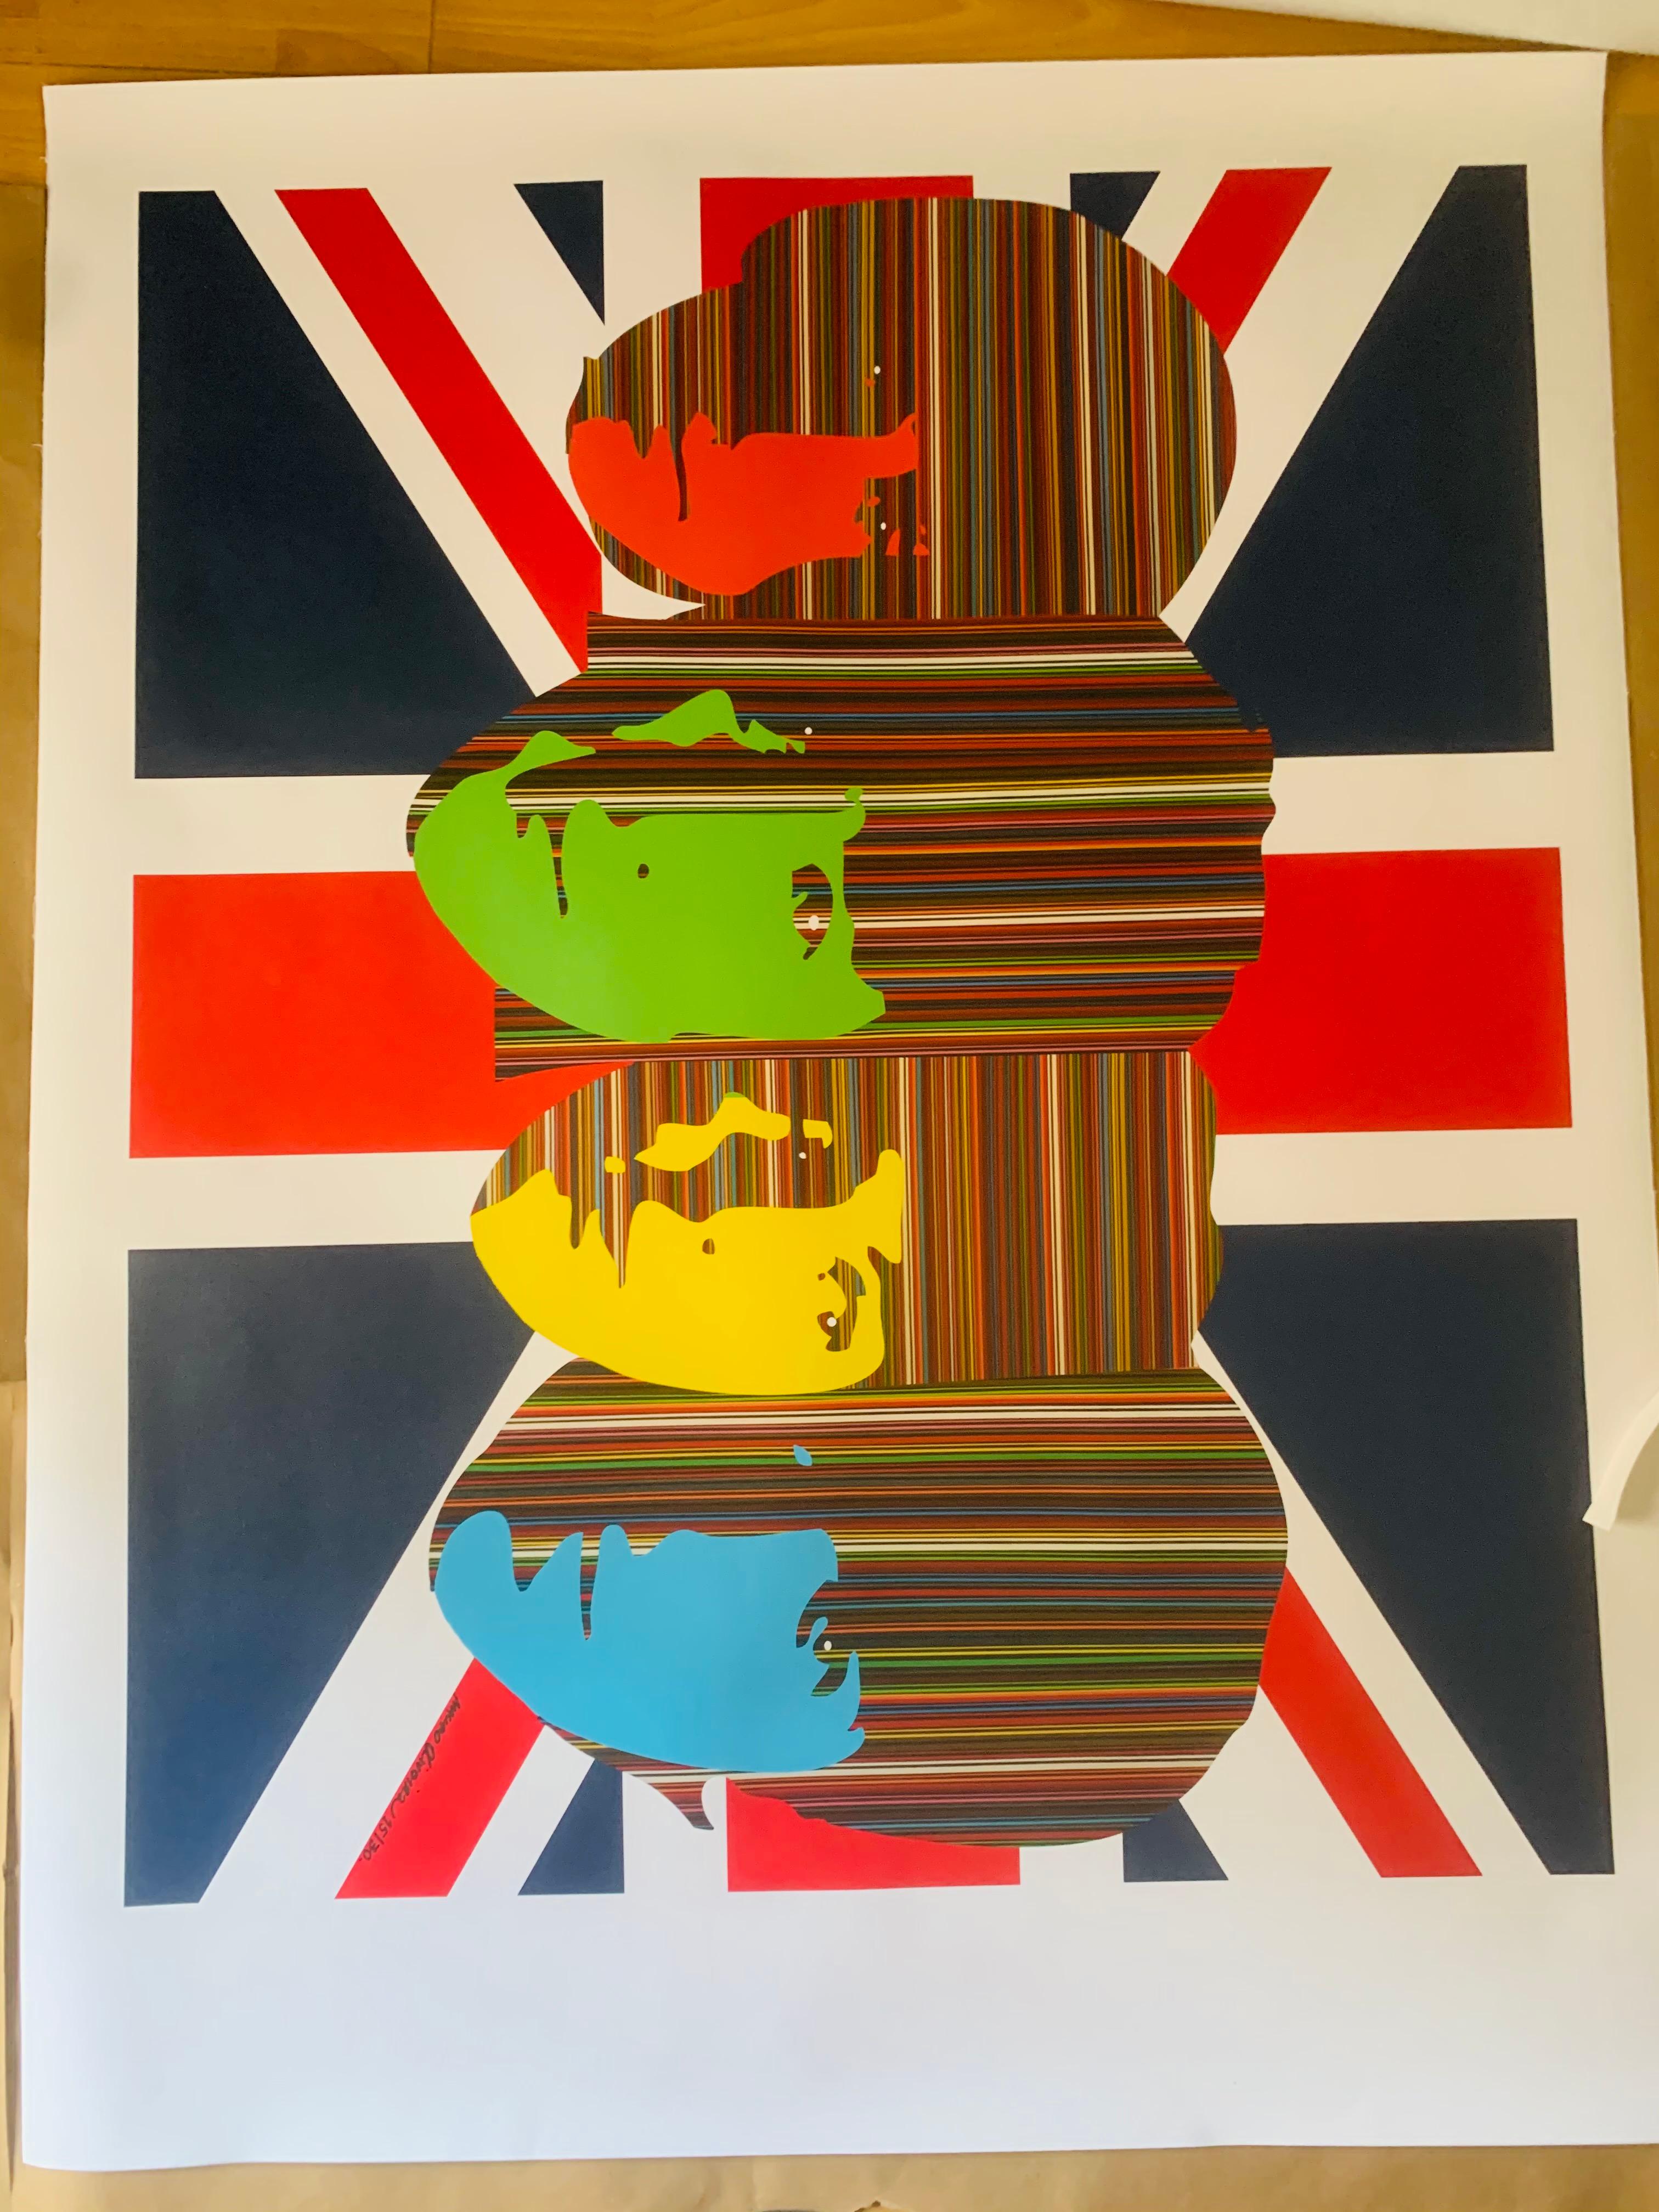 All We Need Is Love-British Flaggen-Version (imitierte Auflage von nur 30 Drucken) (Pop-Art), Print, von Mauro Oliveira